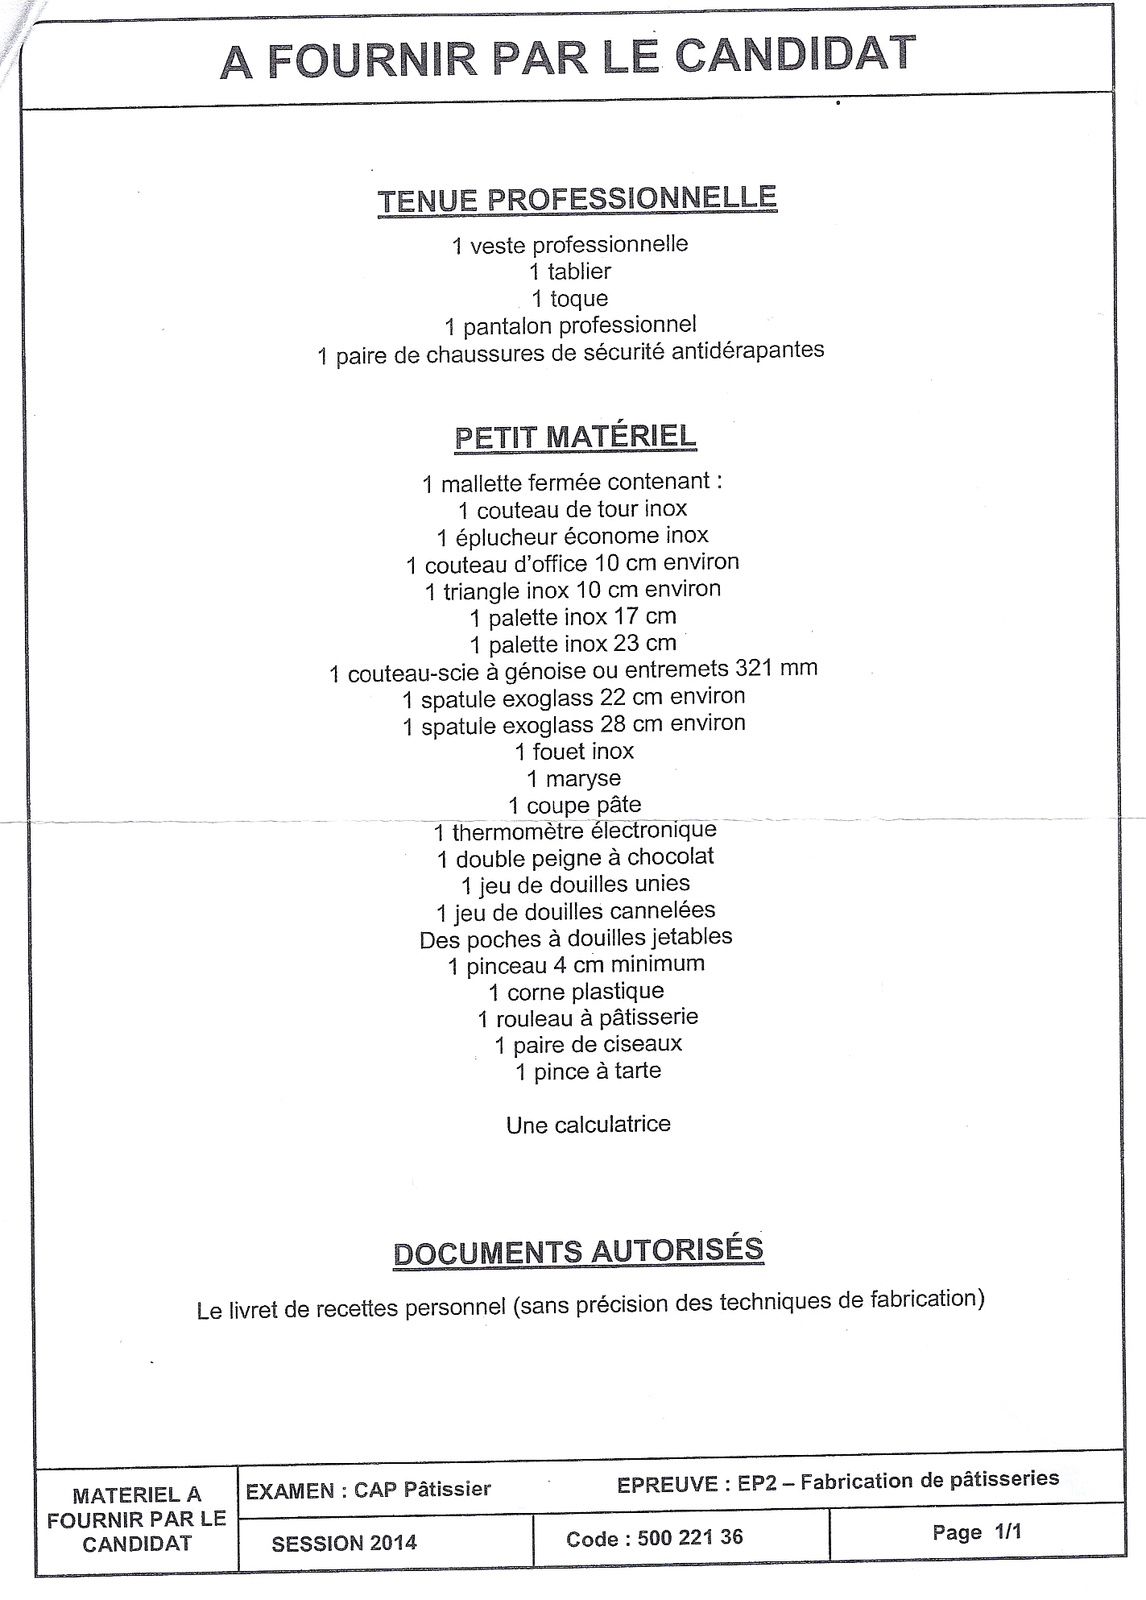 CAP Pâtissier : liste du matériel pour l'examen - Mallette